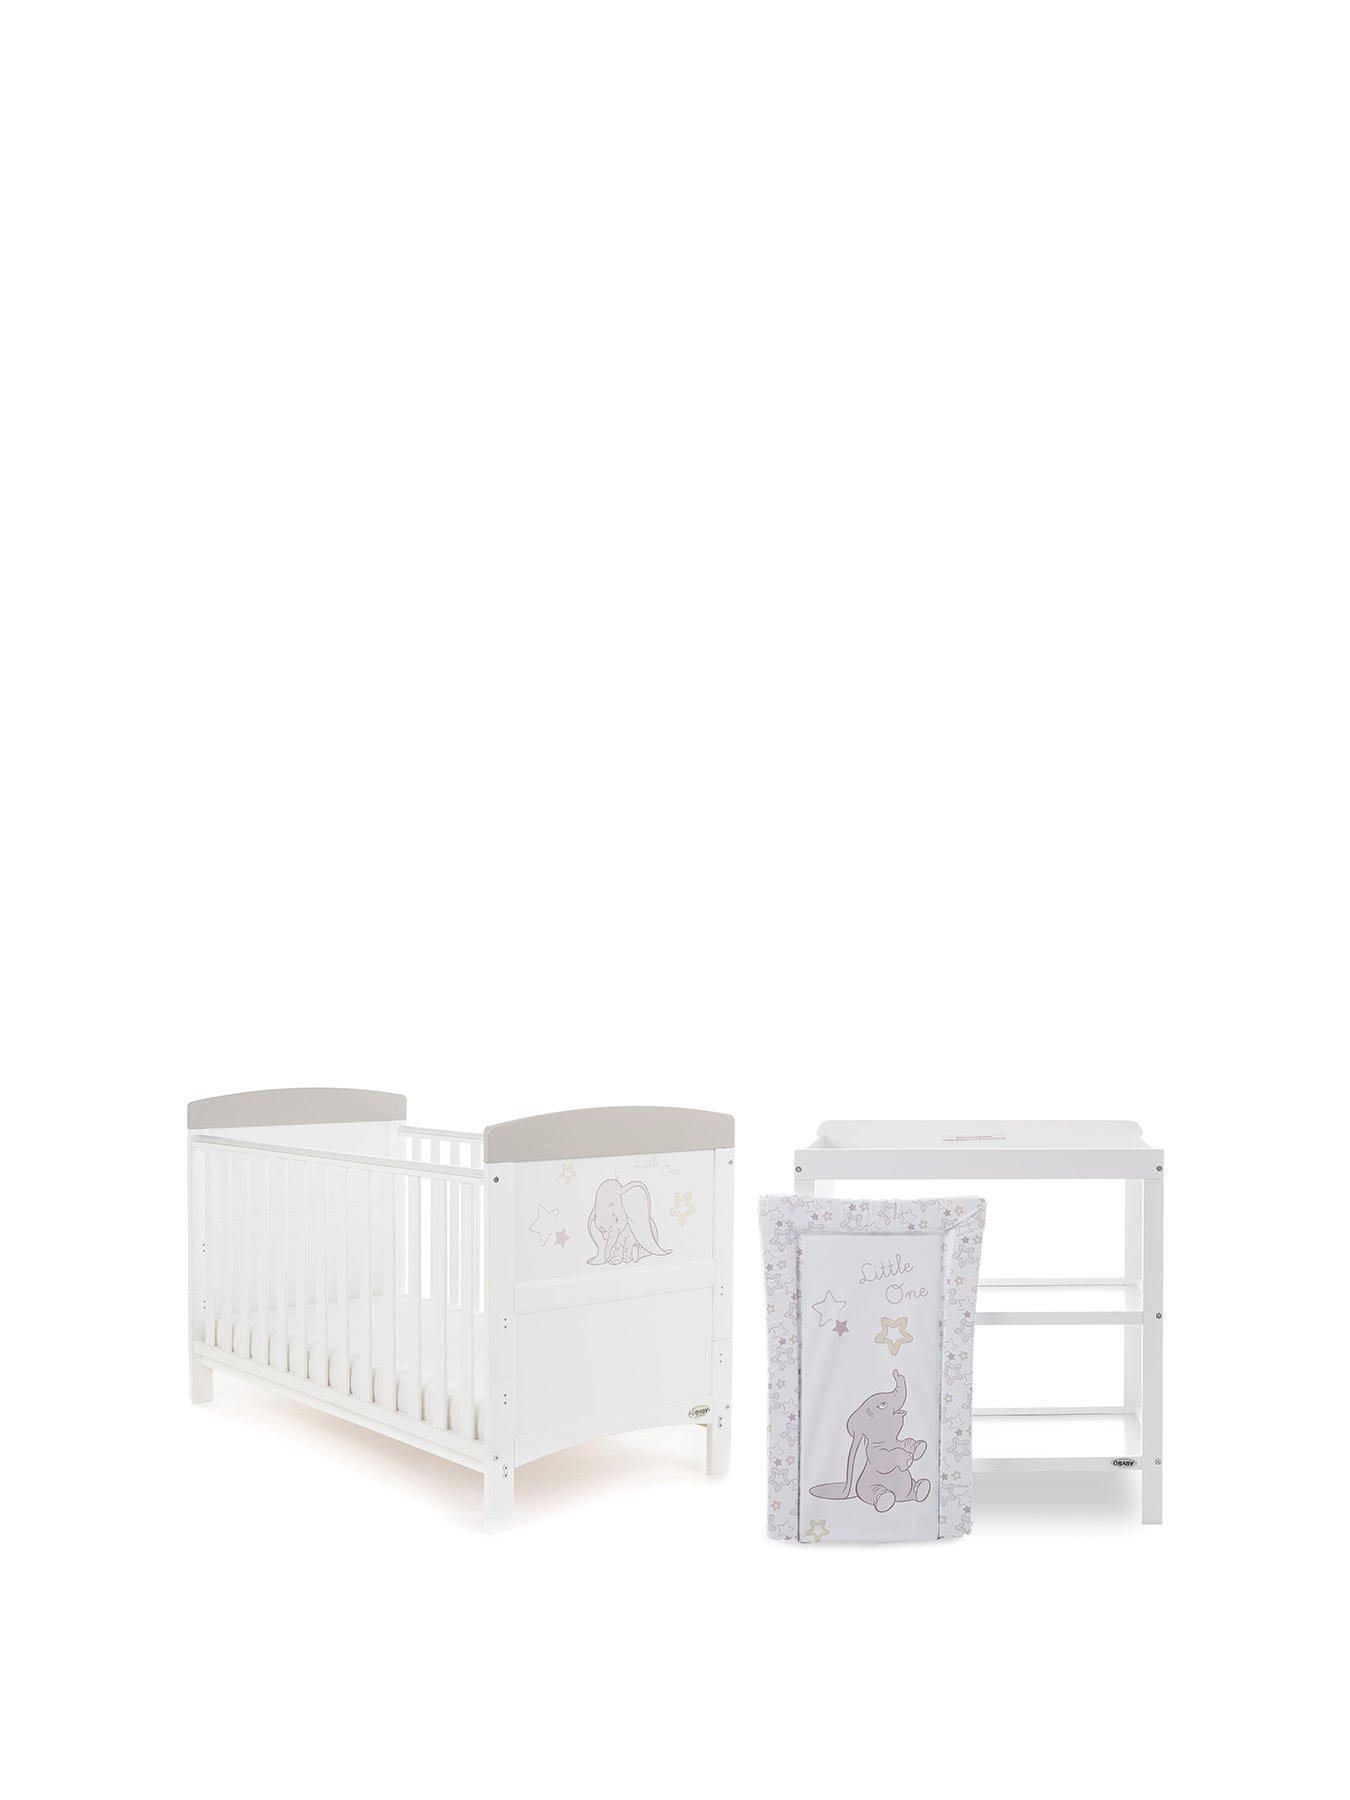 baby bedroom furniture sets